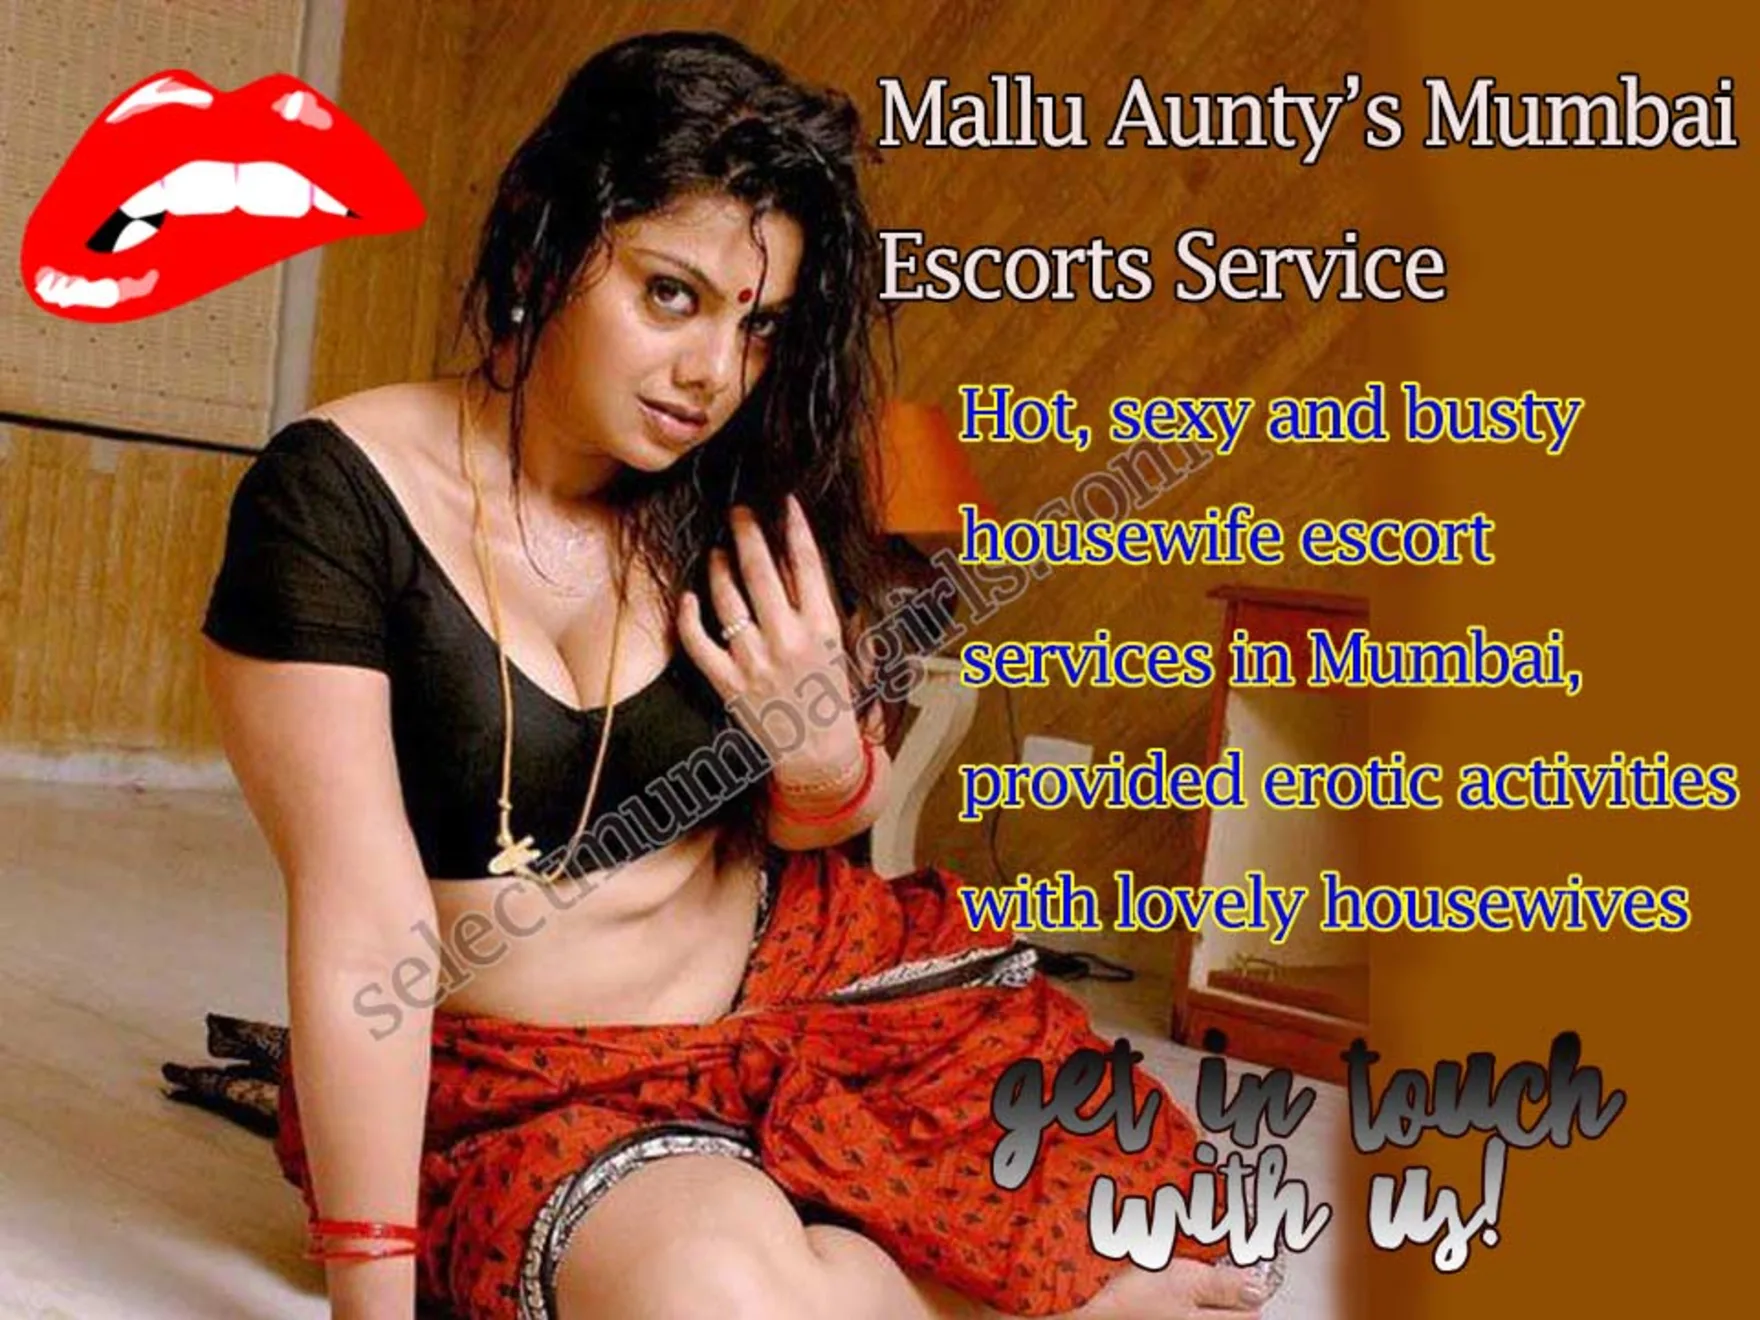 Mallu call girls in Mumbai Hot aunty call escort in mumbai picture image